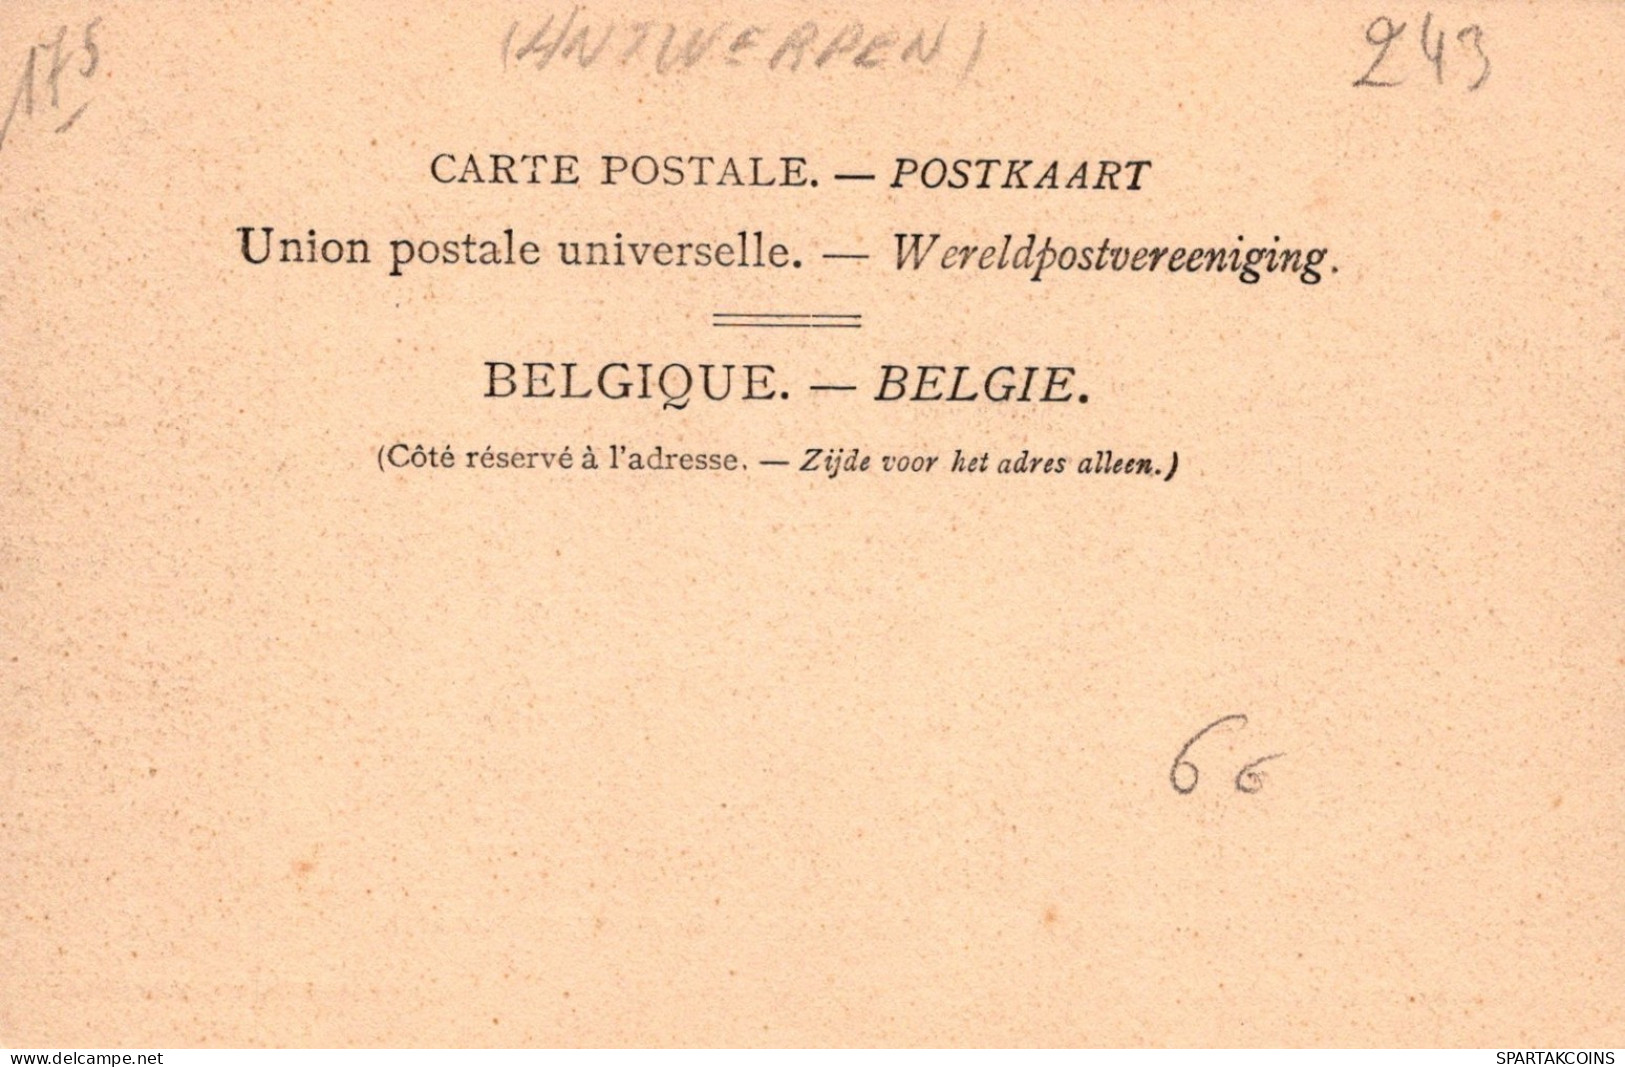 BELGIUM ANTWERPEN Postcard CPA Unposted #PAD295.GB - Antwerpen